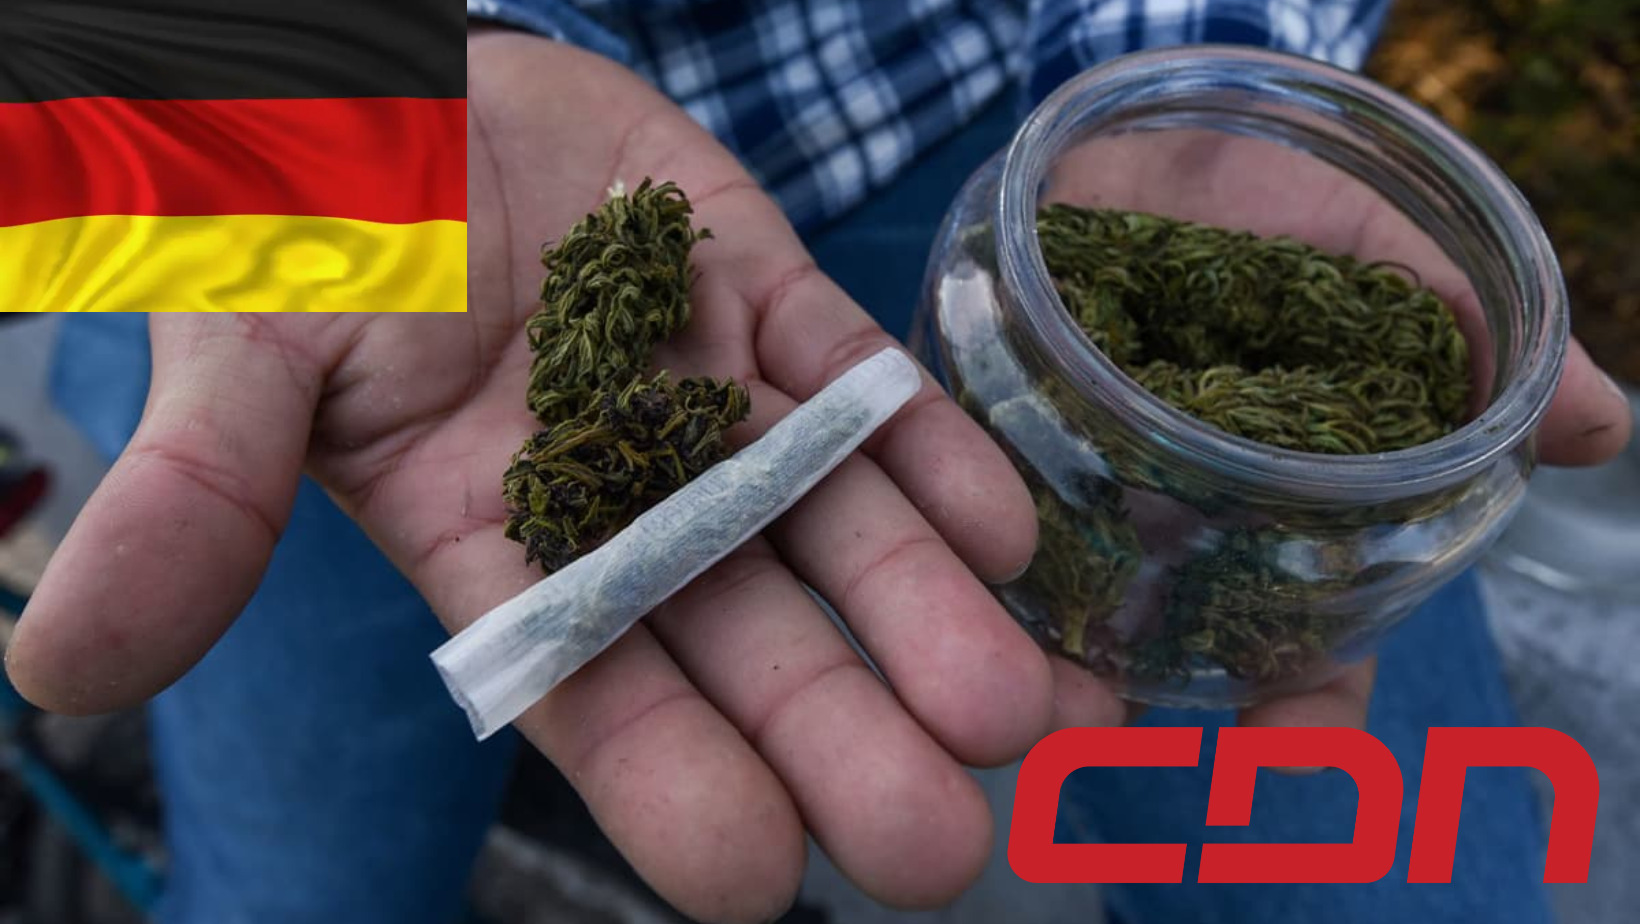 Queda legalizado por la Cámara Baja del Parlamento alemán el consumo y posesión del cannabis. Foto: Fuente externa